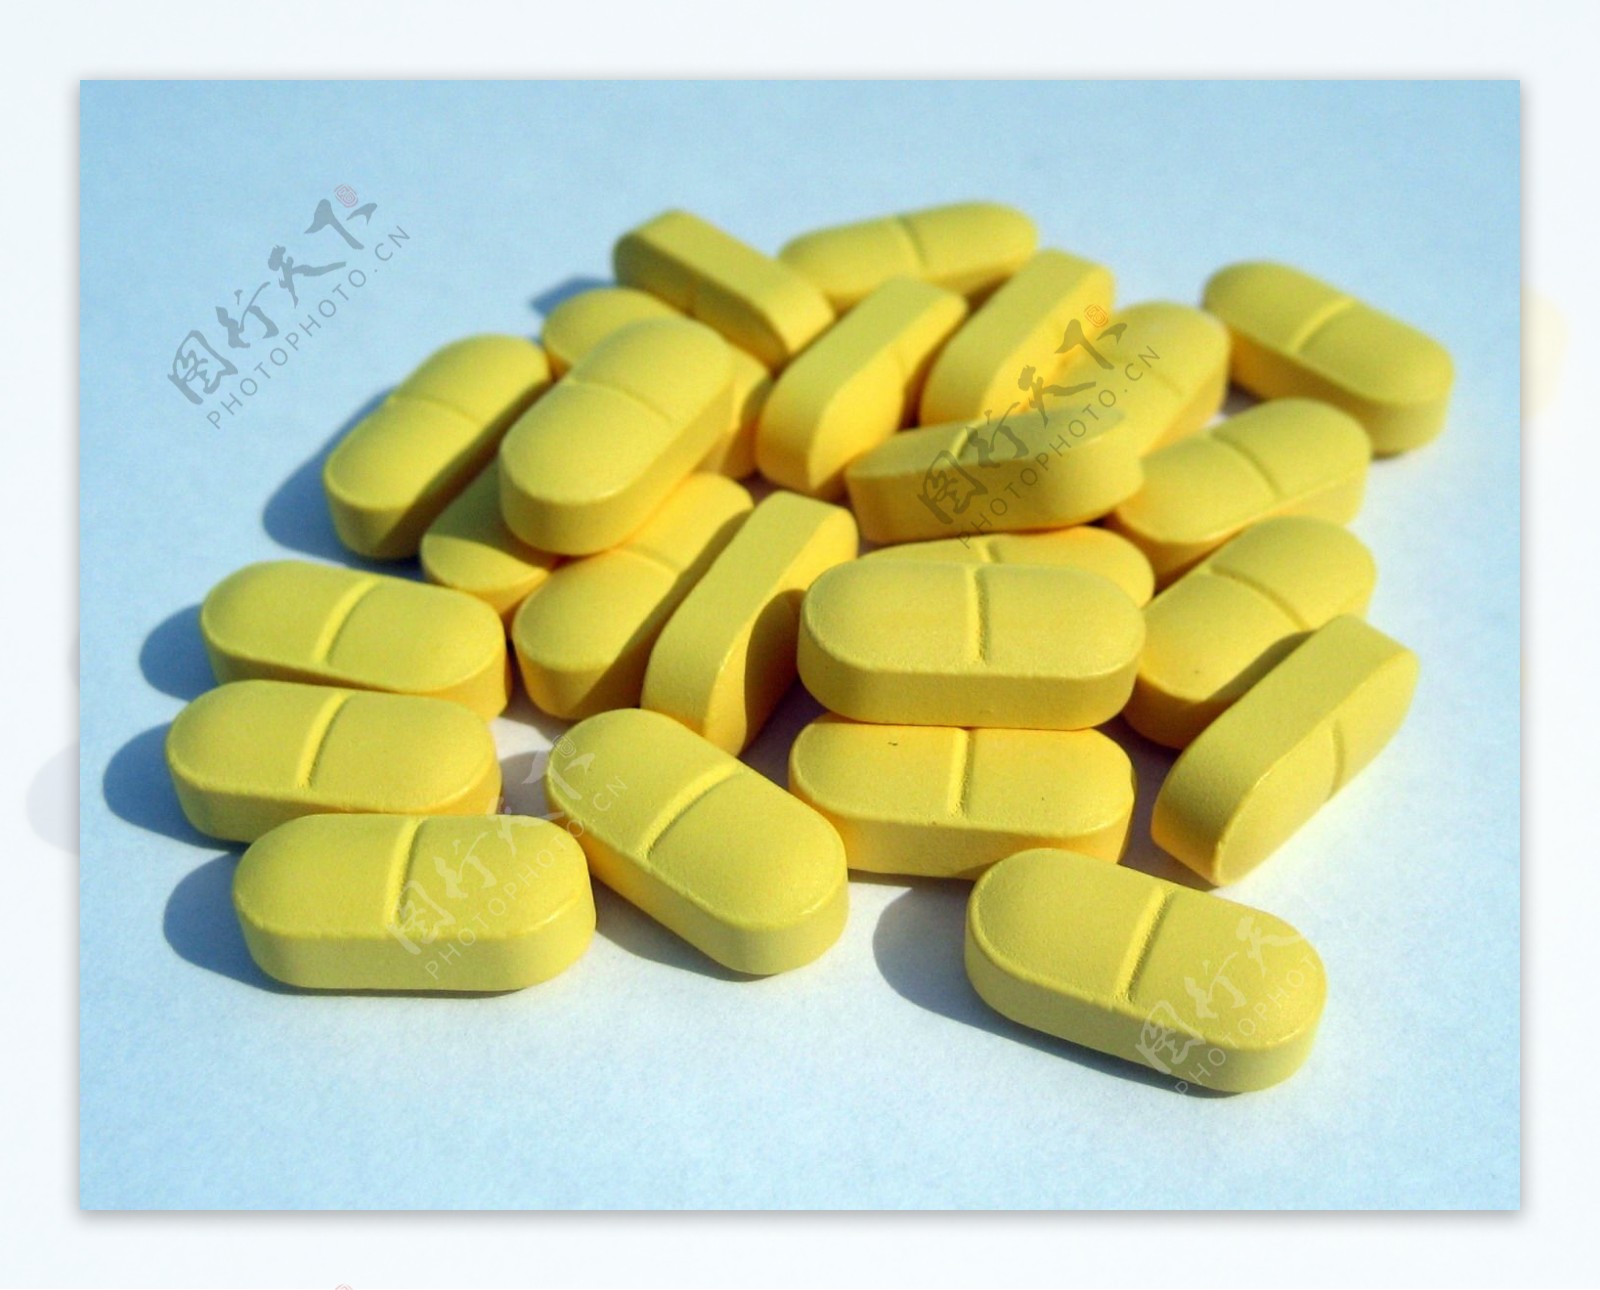 平铺药品药品几板药片几板胶囊胶囊黄绿胶囊医疗用品图片下载 - 觅知网